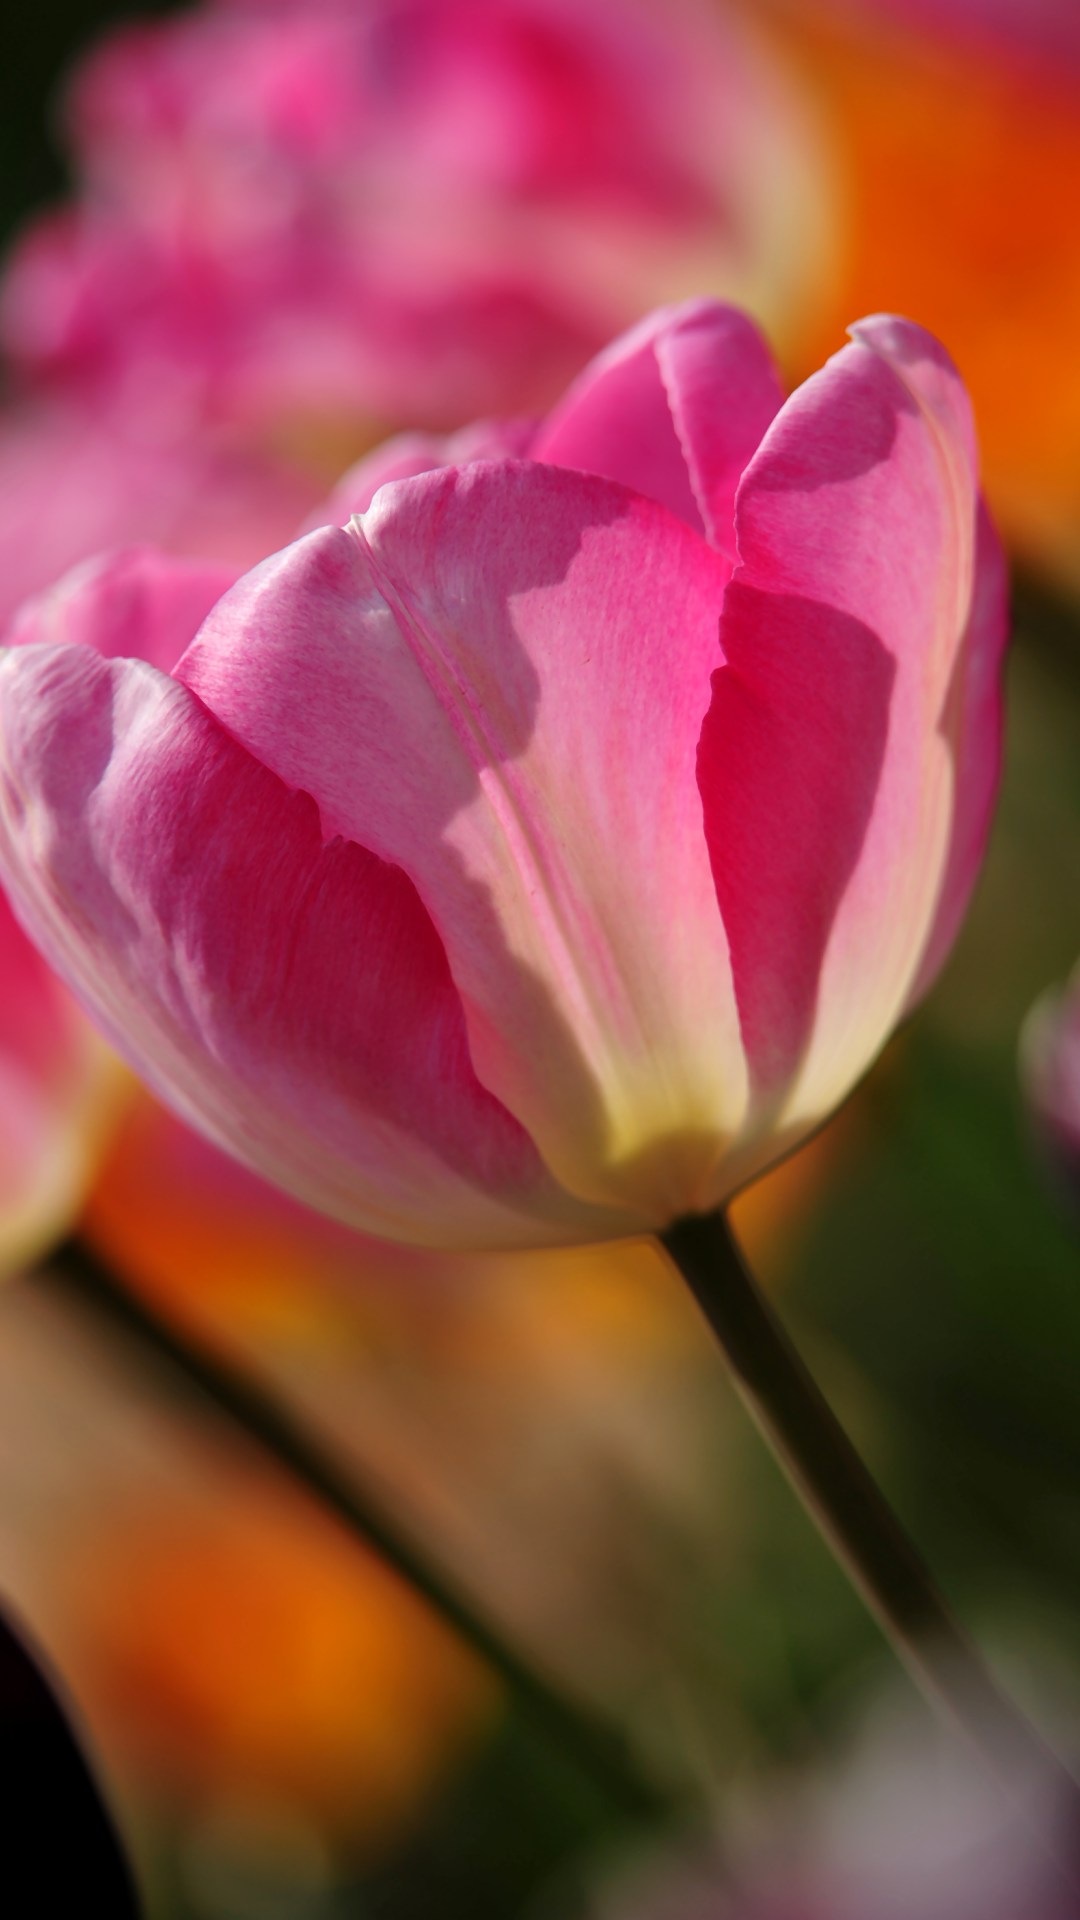 giocare con carta da parati,petalo,pianta fiorita,fiore,tulipano,rosa